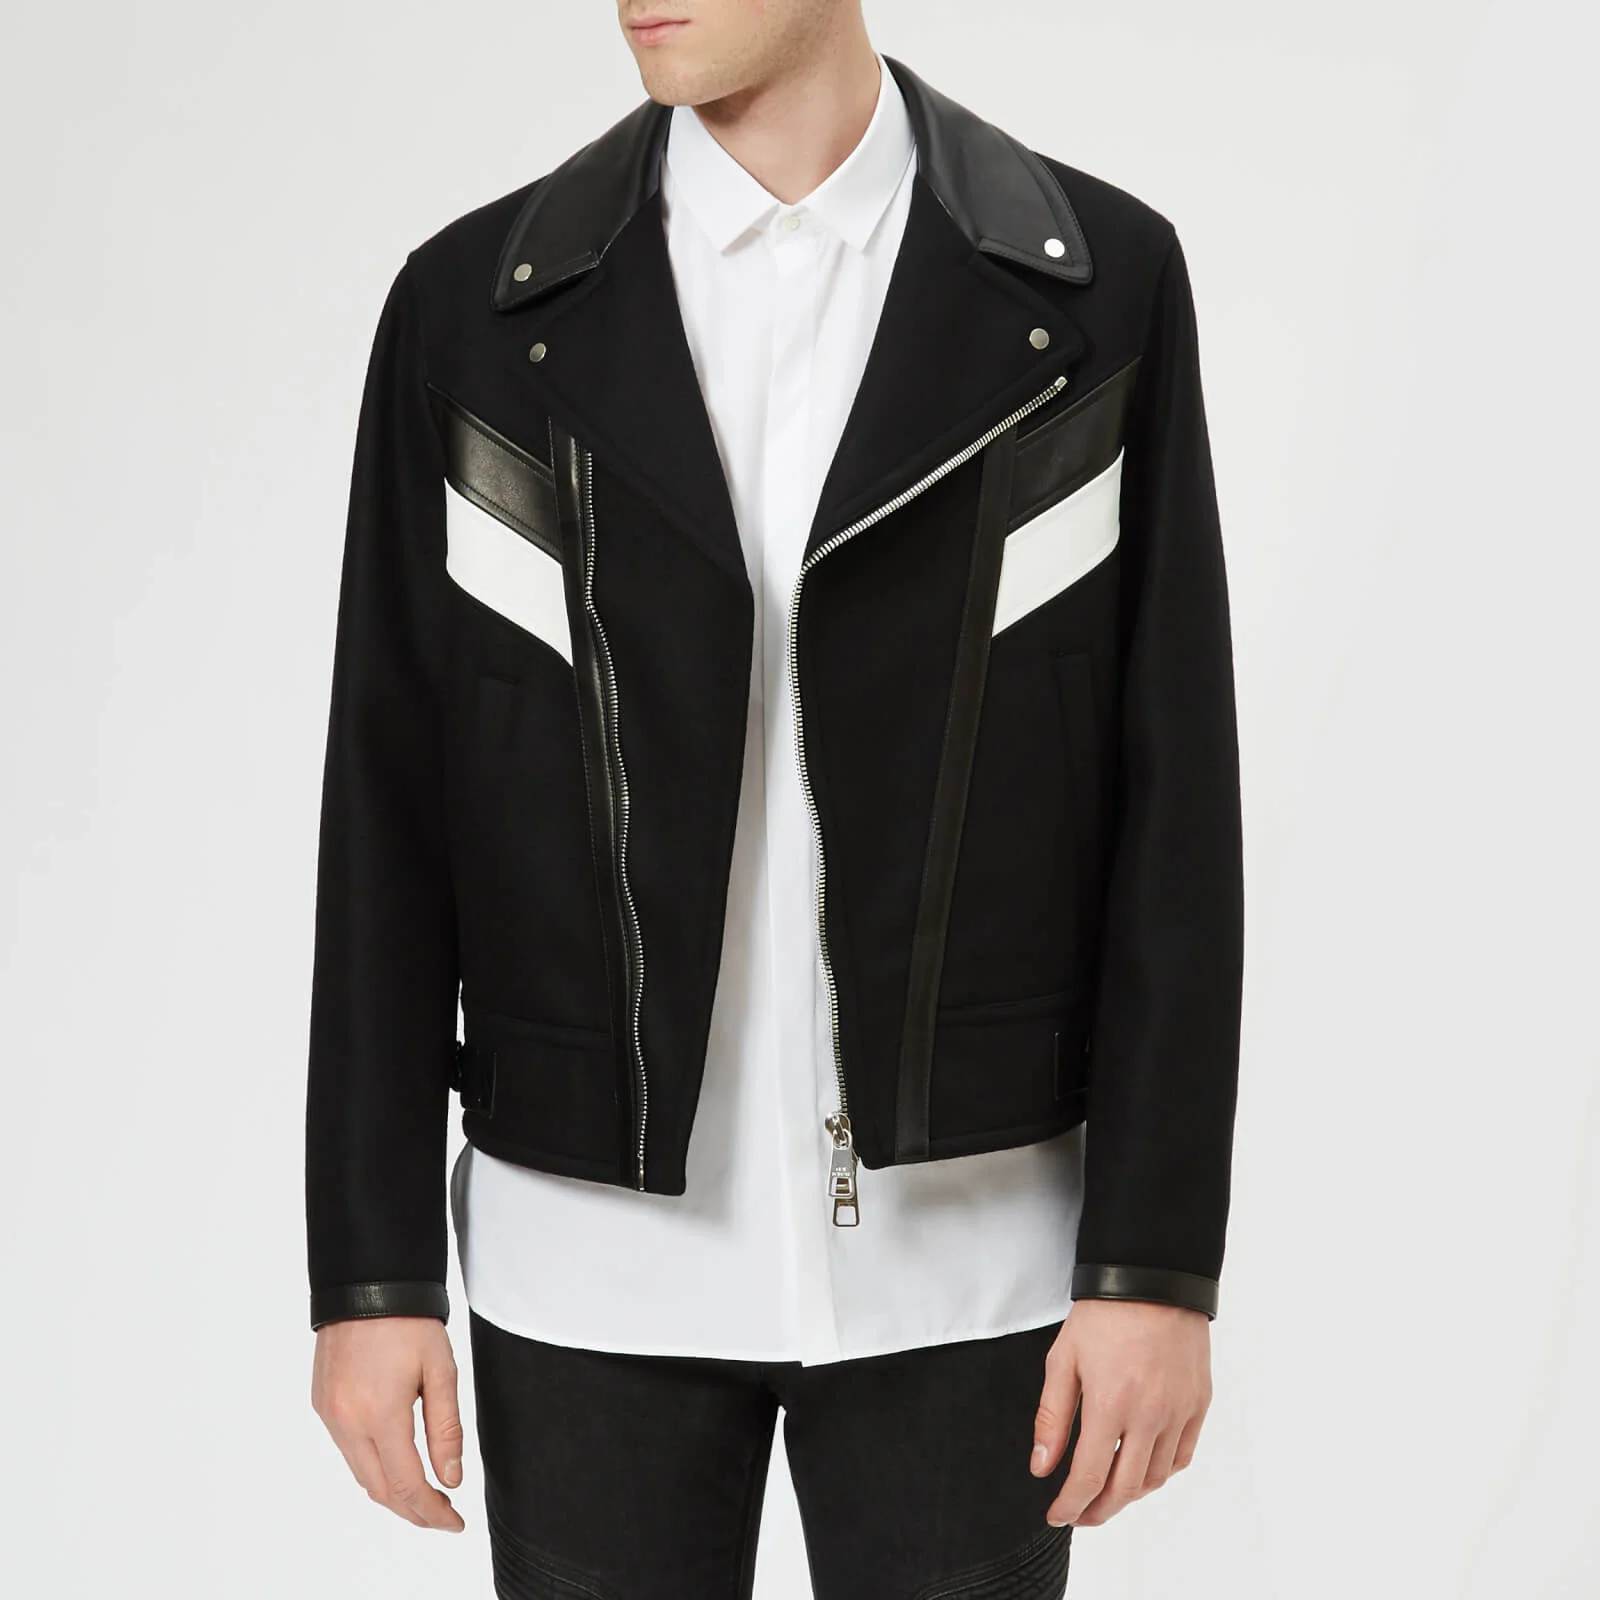 Neil Barrett Men's Wool & Leather Modernist Jacket - Black/White Image 1